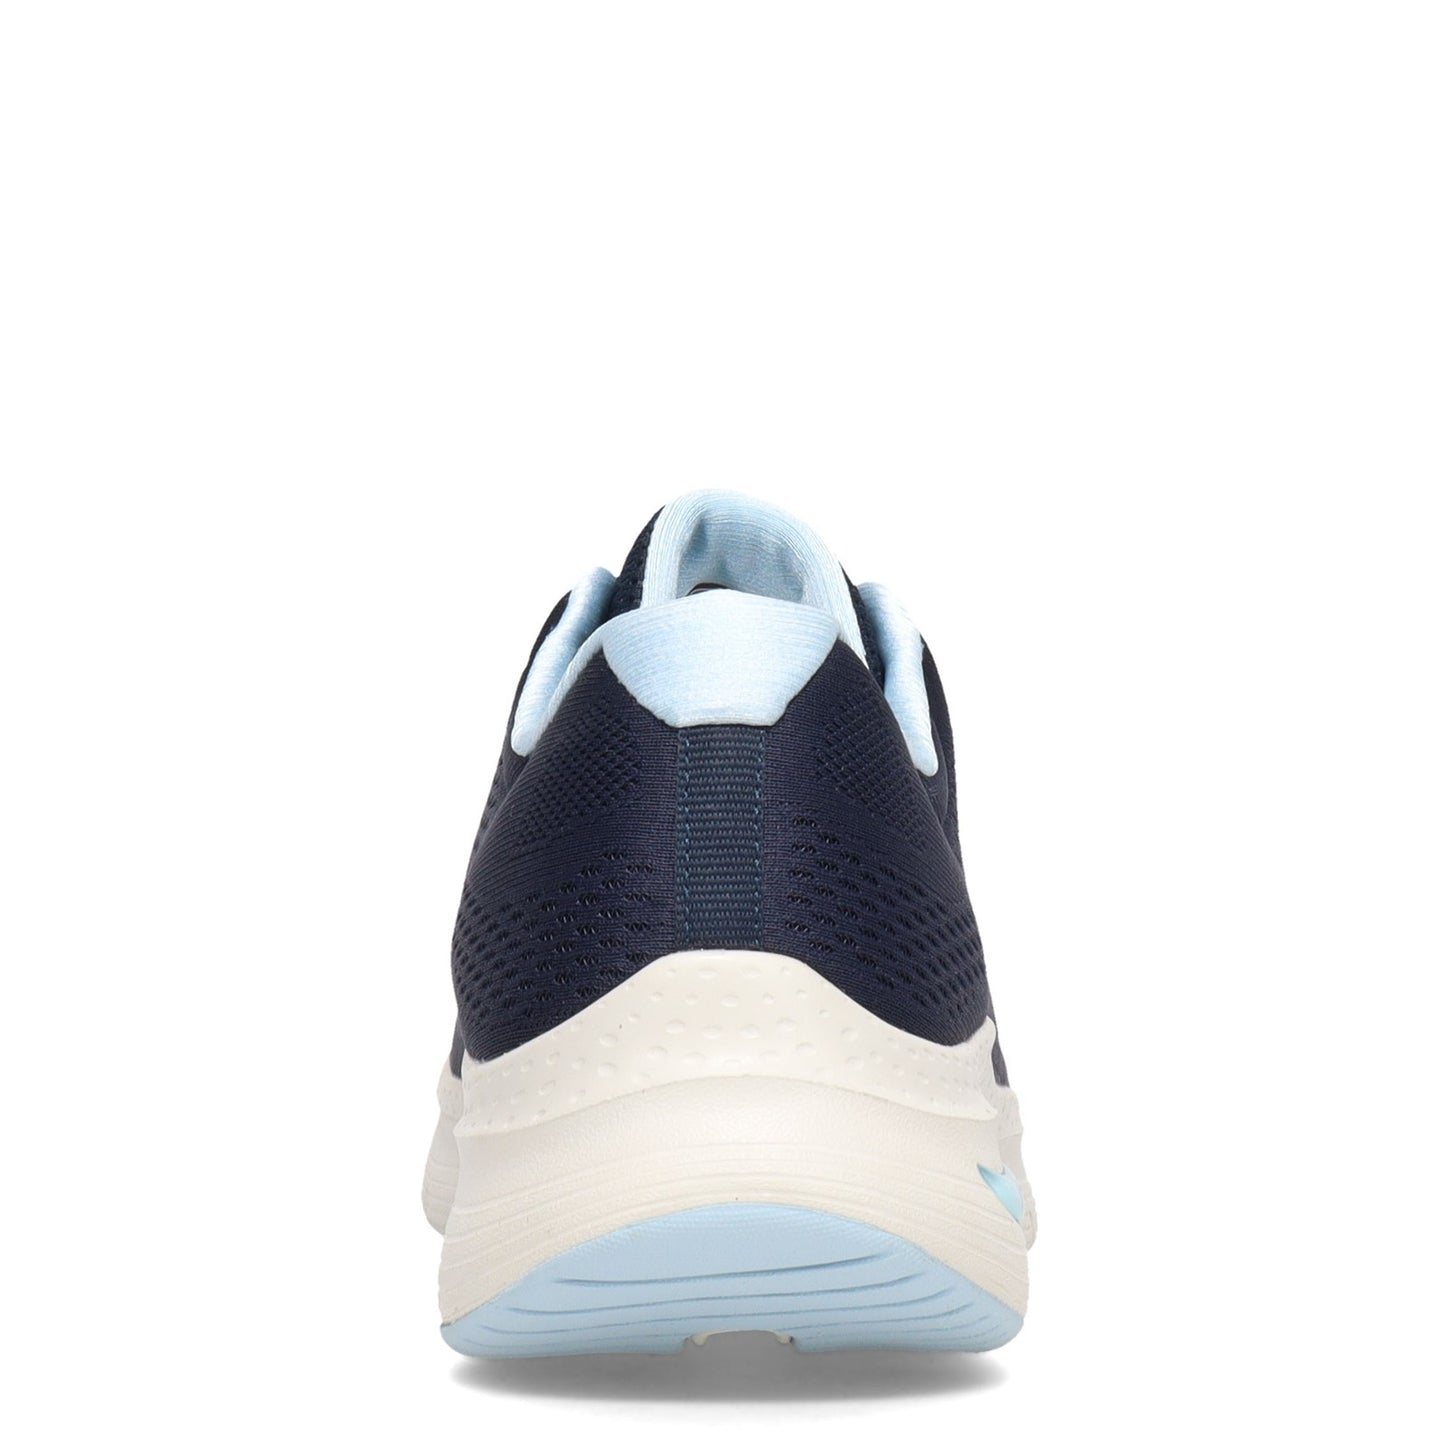 Peltz Shoes  Women's Skechers Arch Fit - Big Appeal Sneaker NAVY / BLUE 149057-NVLB